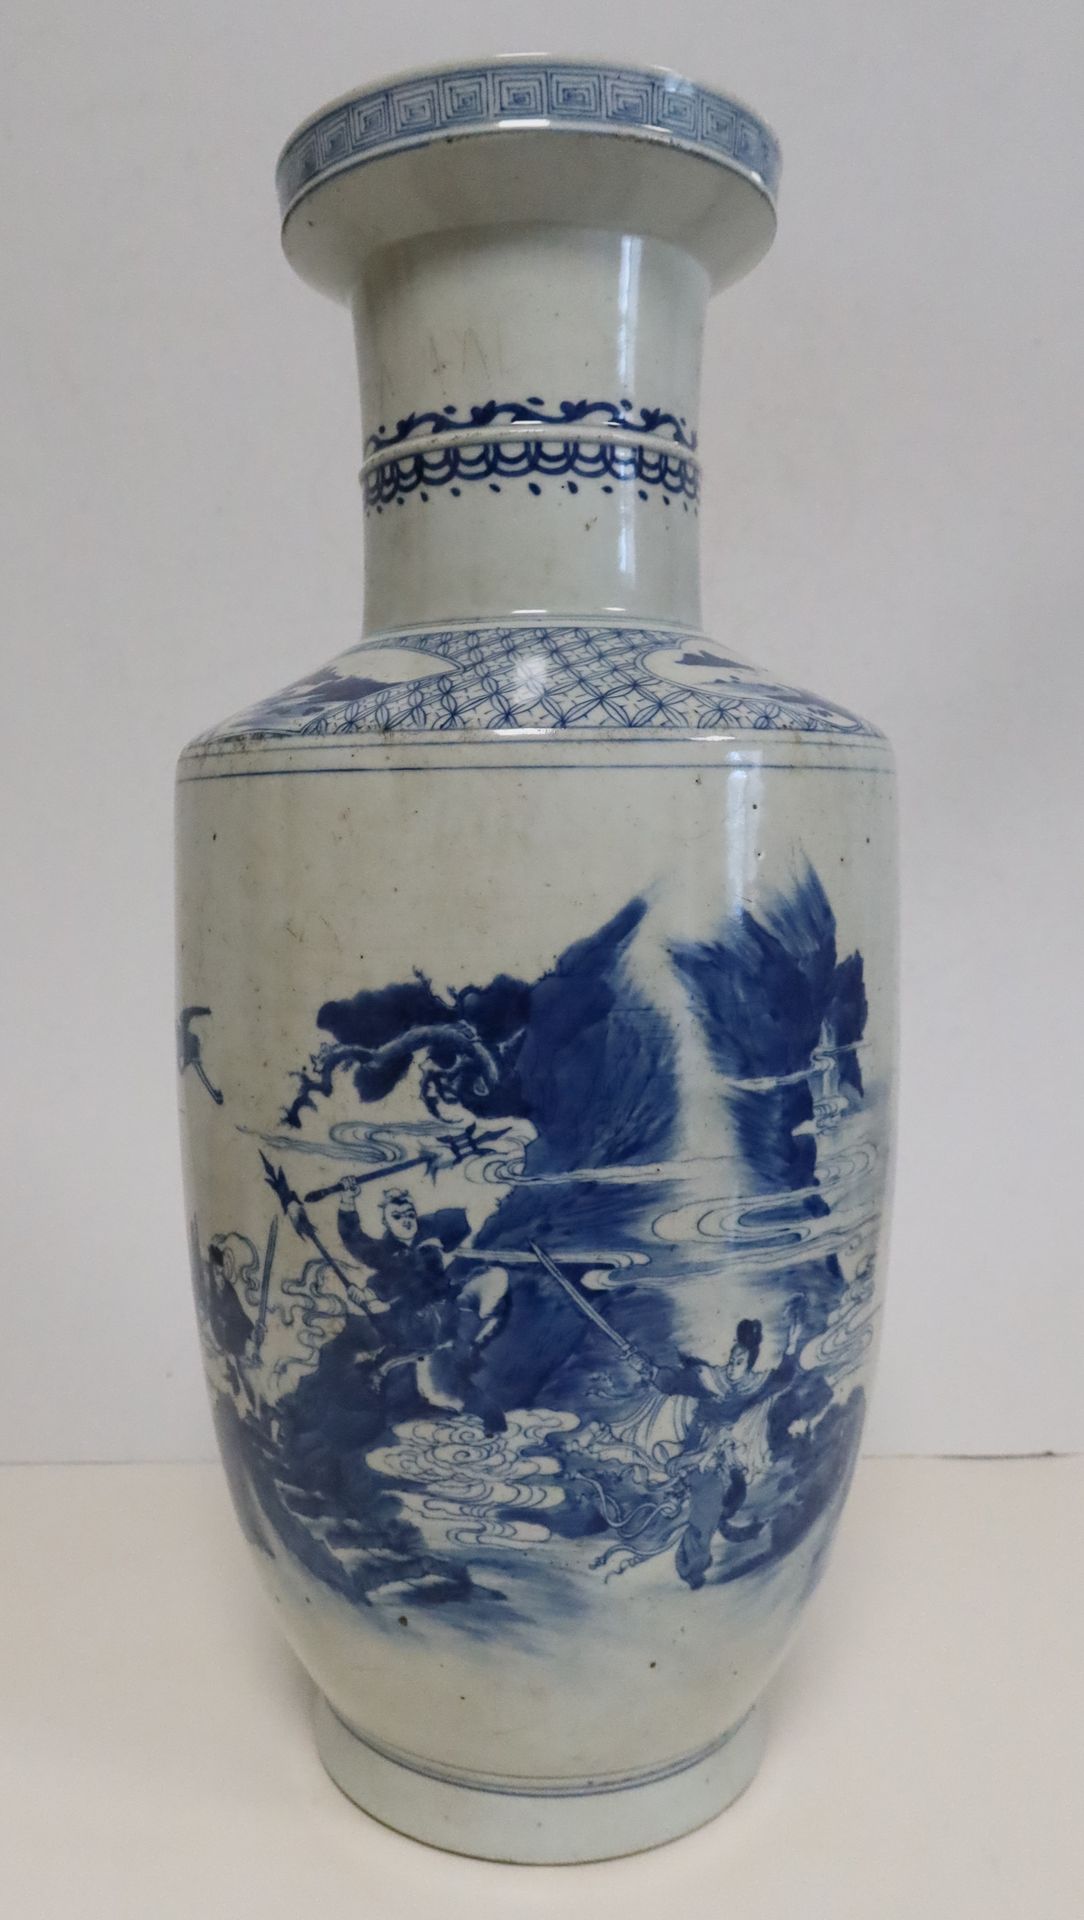 Null 瓷瓶，中国，19世纪末一个
圆柱形的瓶身，装饰着青花神话场景和书法
。
刮伤。
高度：45厘米